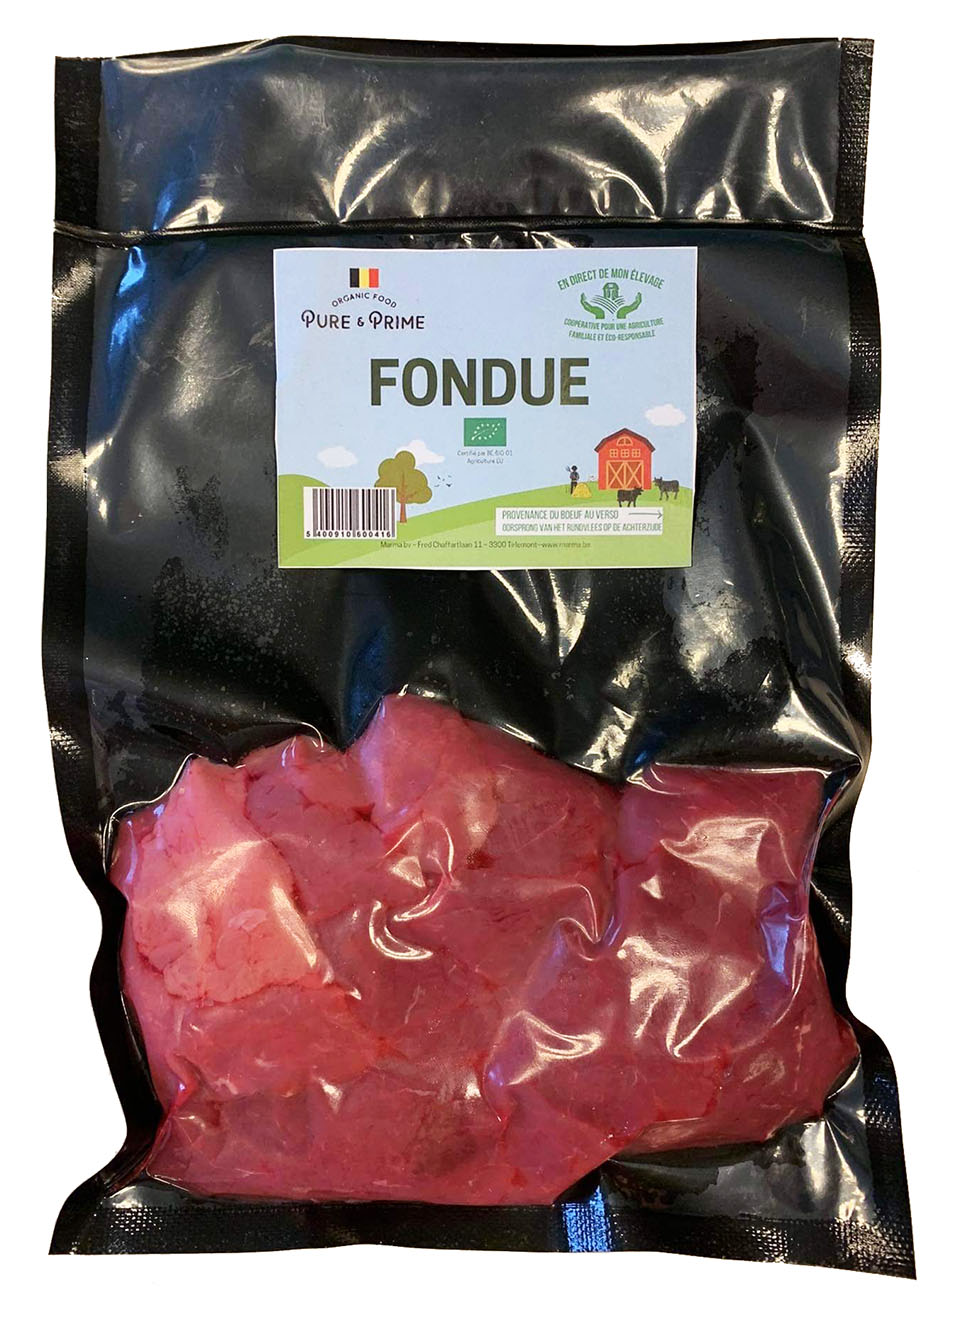 Pure & Prime Fondue bio 350g